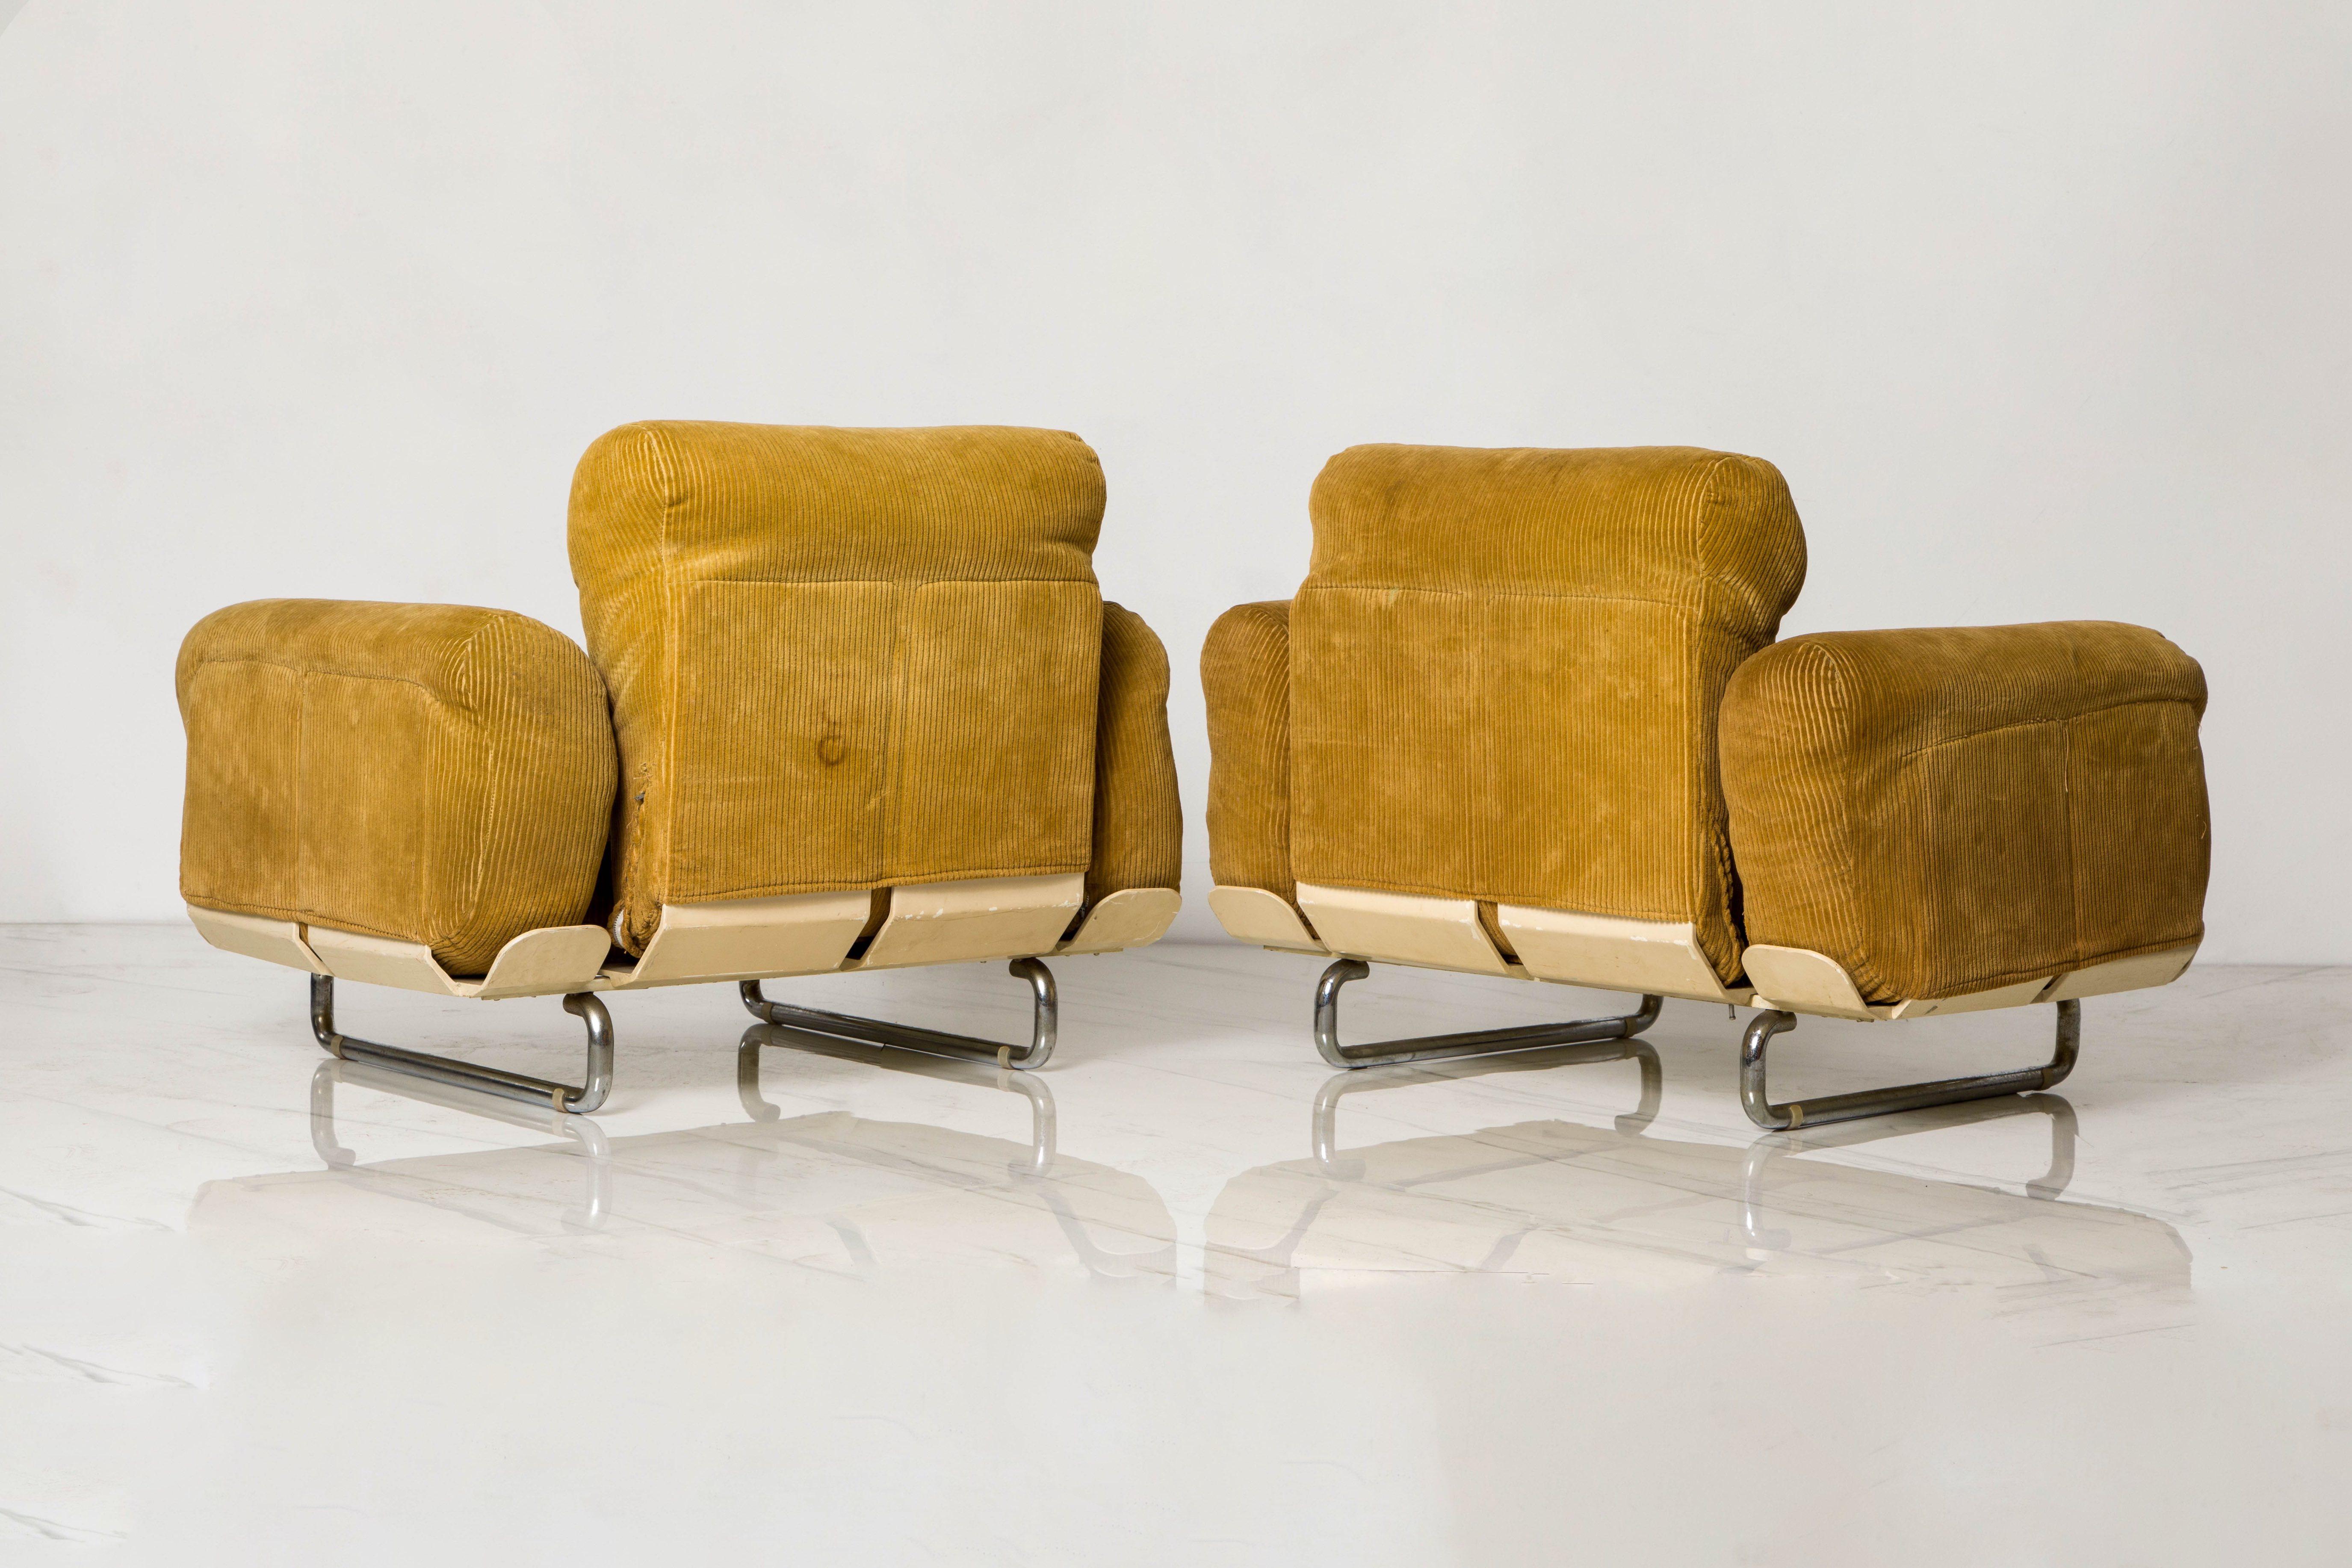 Steel Rare 'Senzafine' Lounge Chairs by Eleonore Riva for Zanotta, 1969, Signed